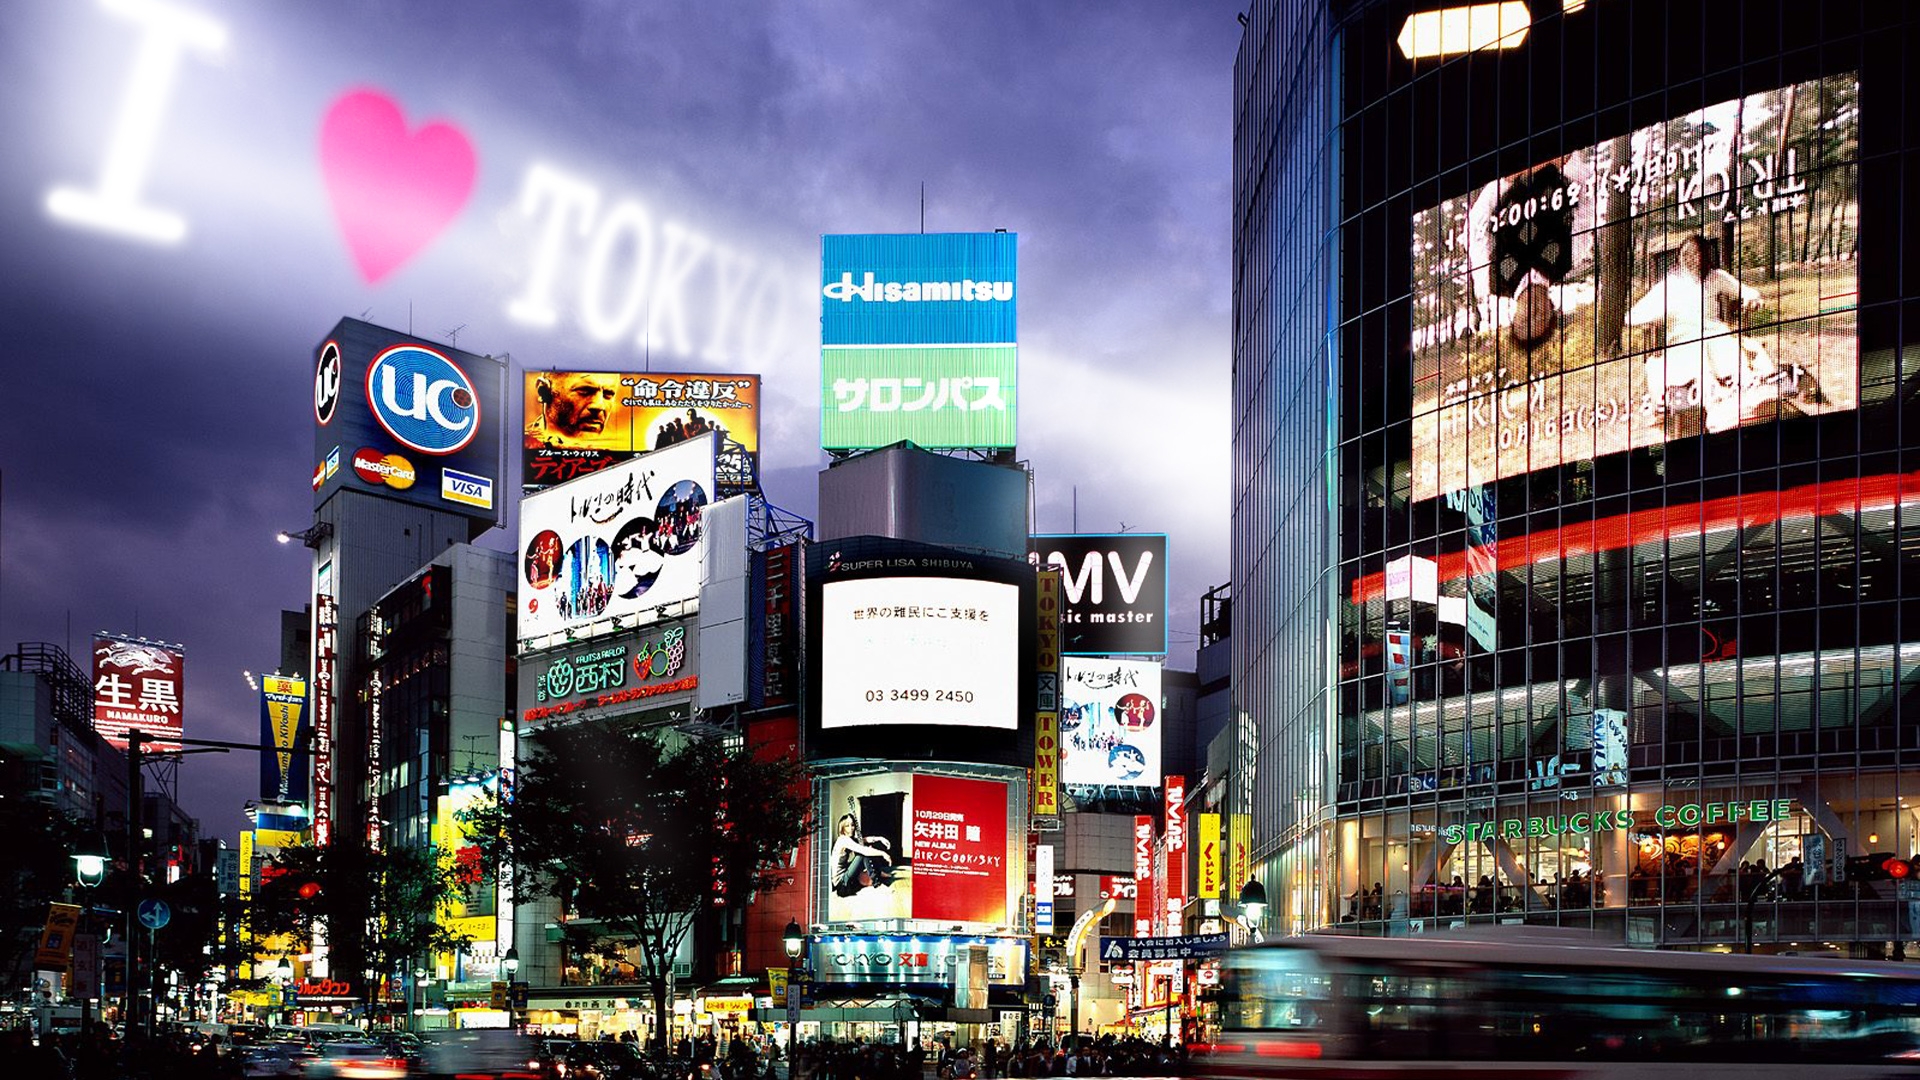 Tokyo Hd Wallpapers - Windows 10 Theme Japan - HD Wallpaper 